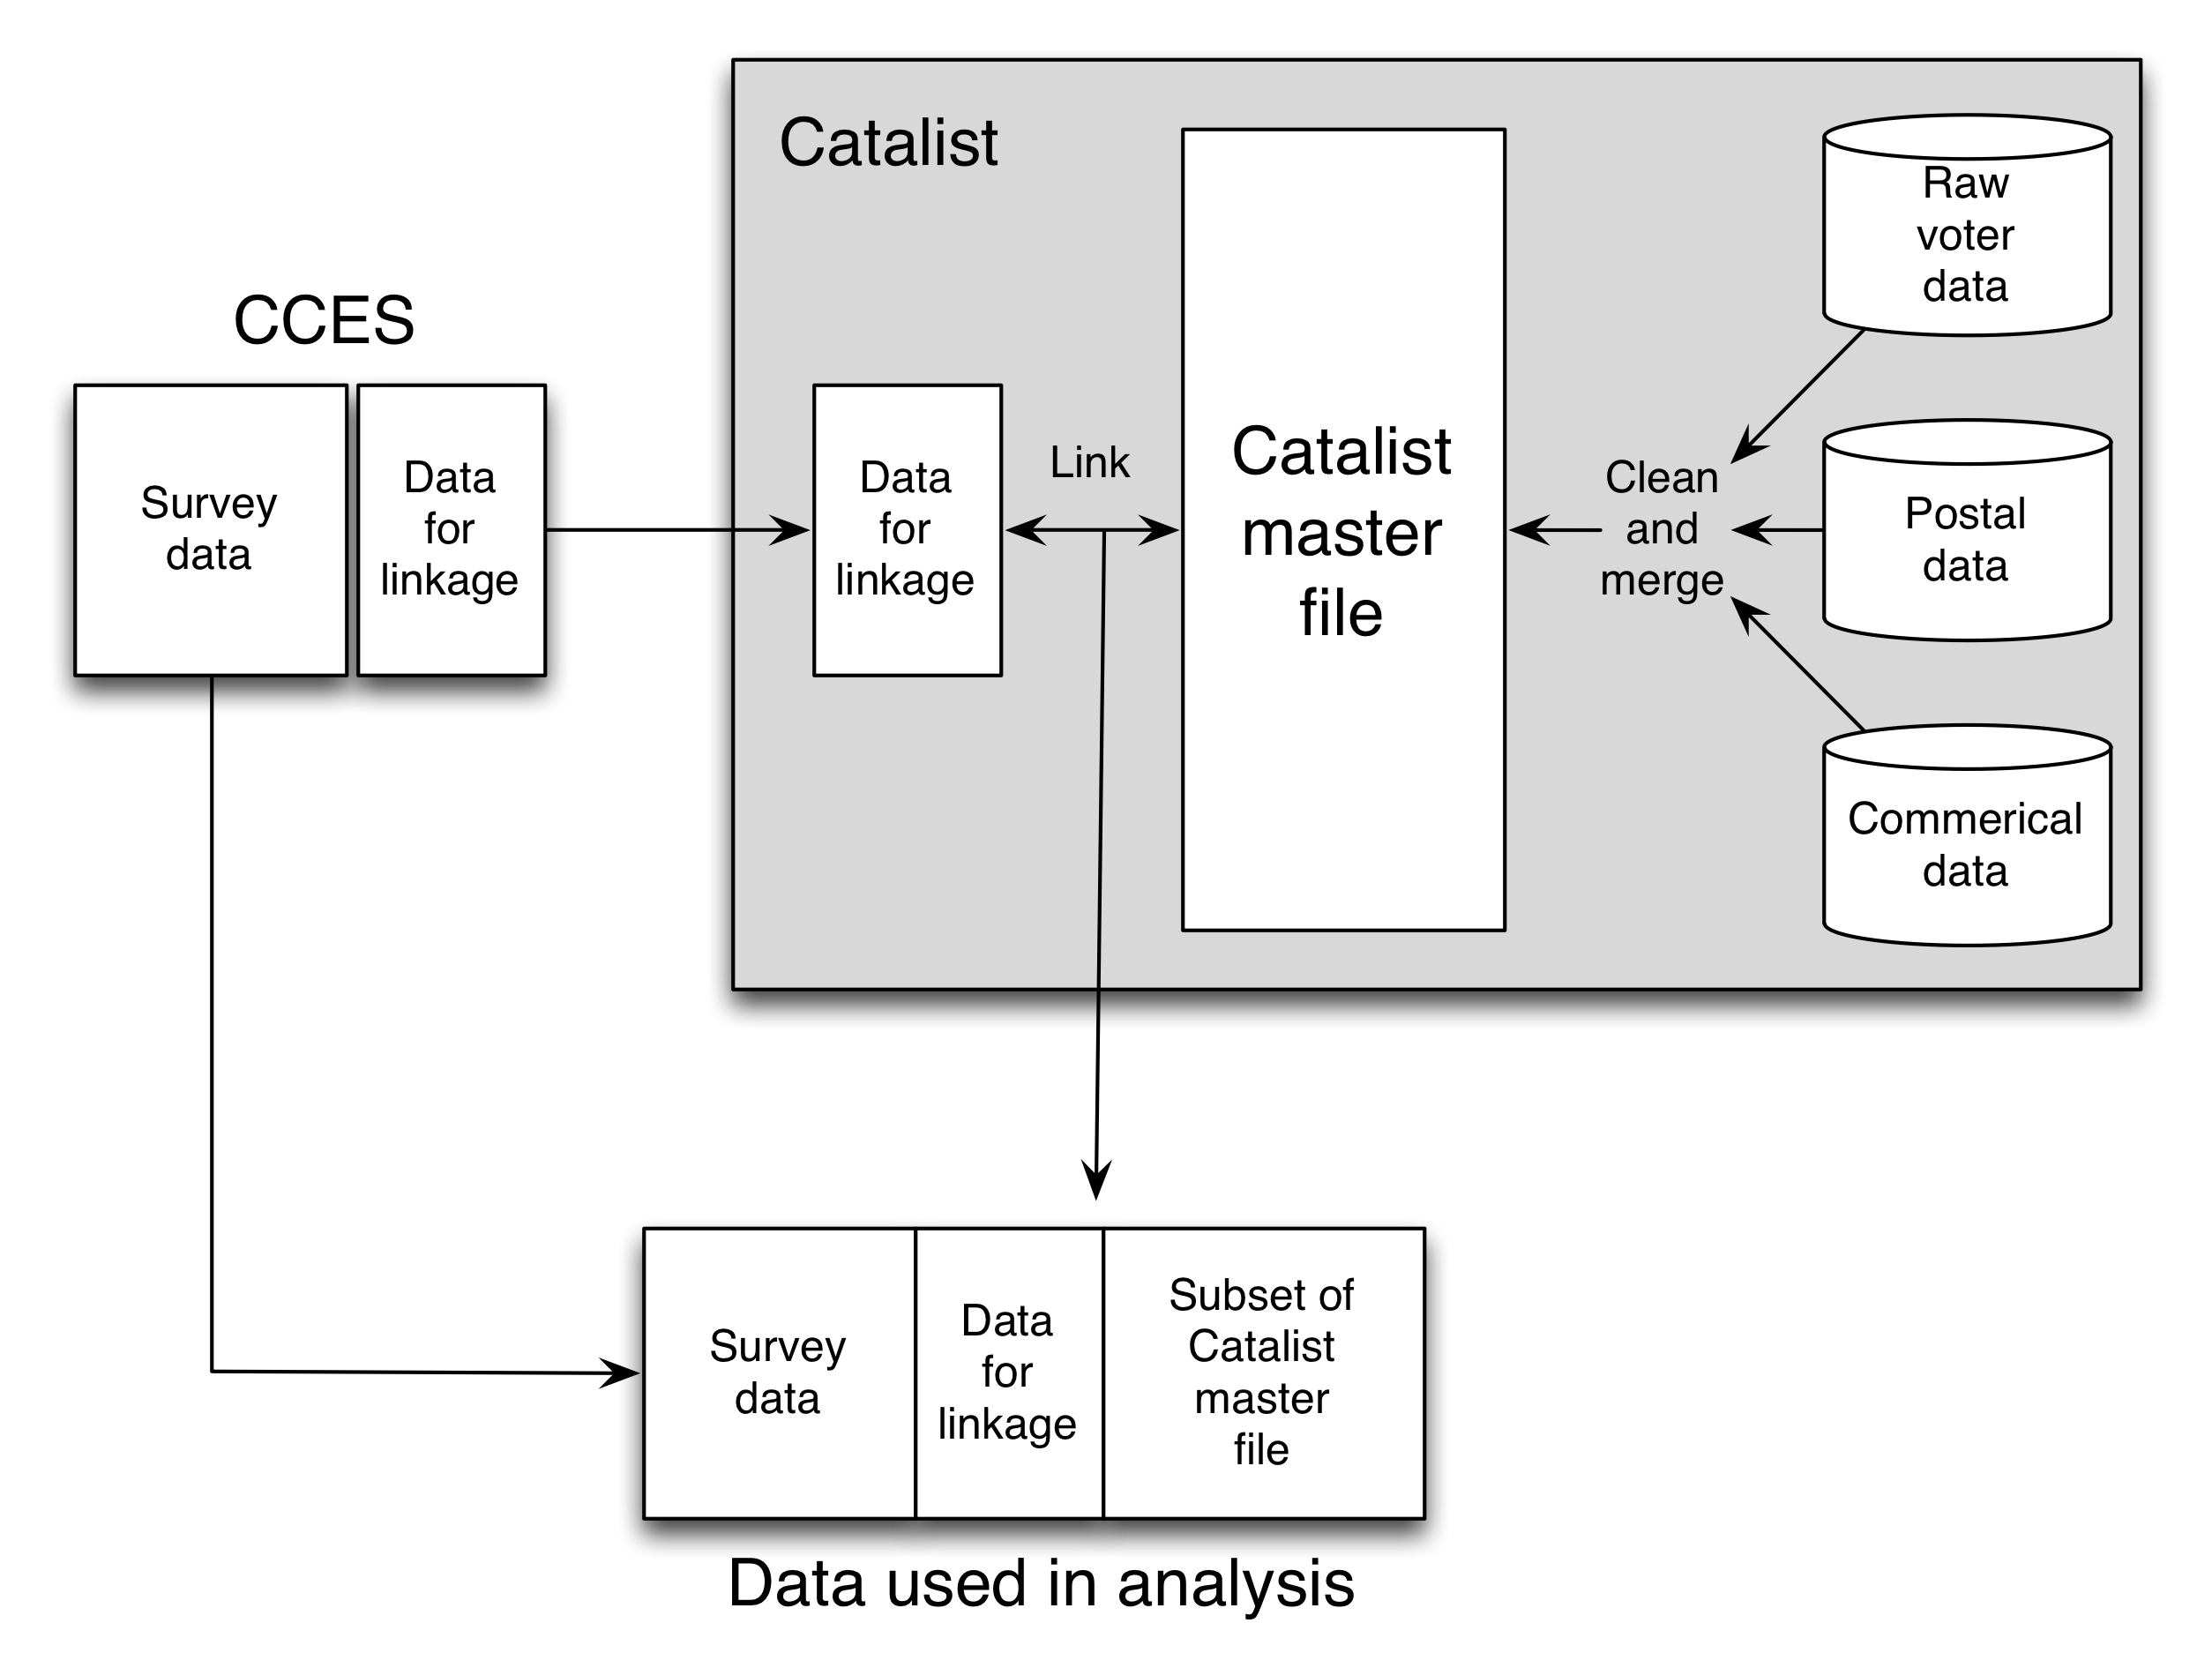 Hình 3.13: Sơ đồ nghiên cứu của Ansolabehere và Hersh (2012). Để tạo datafile chính, Catalist kết hợp và hài hòa thông tin từ nhiều nguồn khác nhau. Quá trình sáp nhập này, bất kể việc cẩn thận, sẽ lan truyền sai sót trong các nguồn dữ liệu gốc và sẽ giới thiệu các lỗi mới. Một nguồn lỗi thứ hai là liên kết bản ghi giữa dữ liệu khảo sát và datafile chính. Nếu mọi người đều có một số nhận dạng duy nhất, ổn định trong cả hai nguồn dữ liệu thì mối liên kết sẽ không đáng kể. Nhưng, Catalist phải làm mối liên kết bằng cách sử dụng các định danh không hoàn hảo, trong trường hợp này tên, giới tính, năm sinh và địa chỉ nhà. Thật không may, trong nhiều trường hợp có thể có thông tin không đầy đủ hoặc không chính xác; một cử tri có tên Homer Simpson có thể xuất hiện như Homer Jay Simpson, Homie J Simpson, hoặc thậm chí Homer Sampsin. Mặc dù có khả năng xảy ra lỗi trong datafile chủ Catalist và các lỗi trong liên kết bản ghi, Ansolabehere và Hersh đã có thể xây dựng niềm tin vào ước tính của họ thông qua một số loại kiểm tra khác nhau.